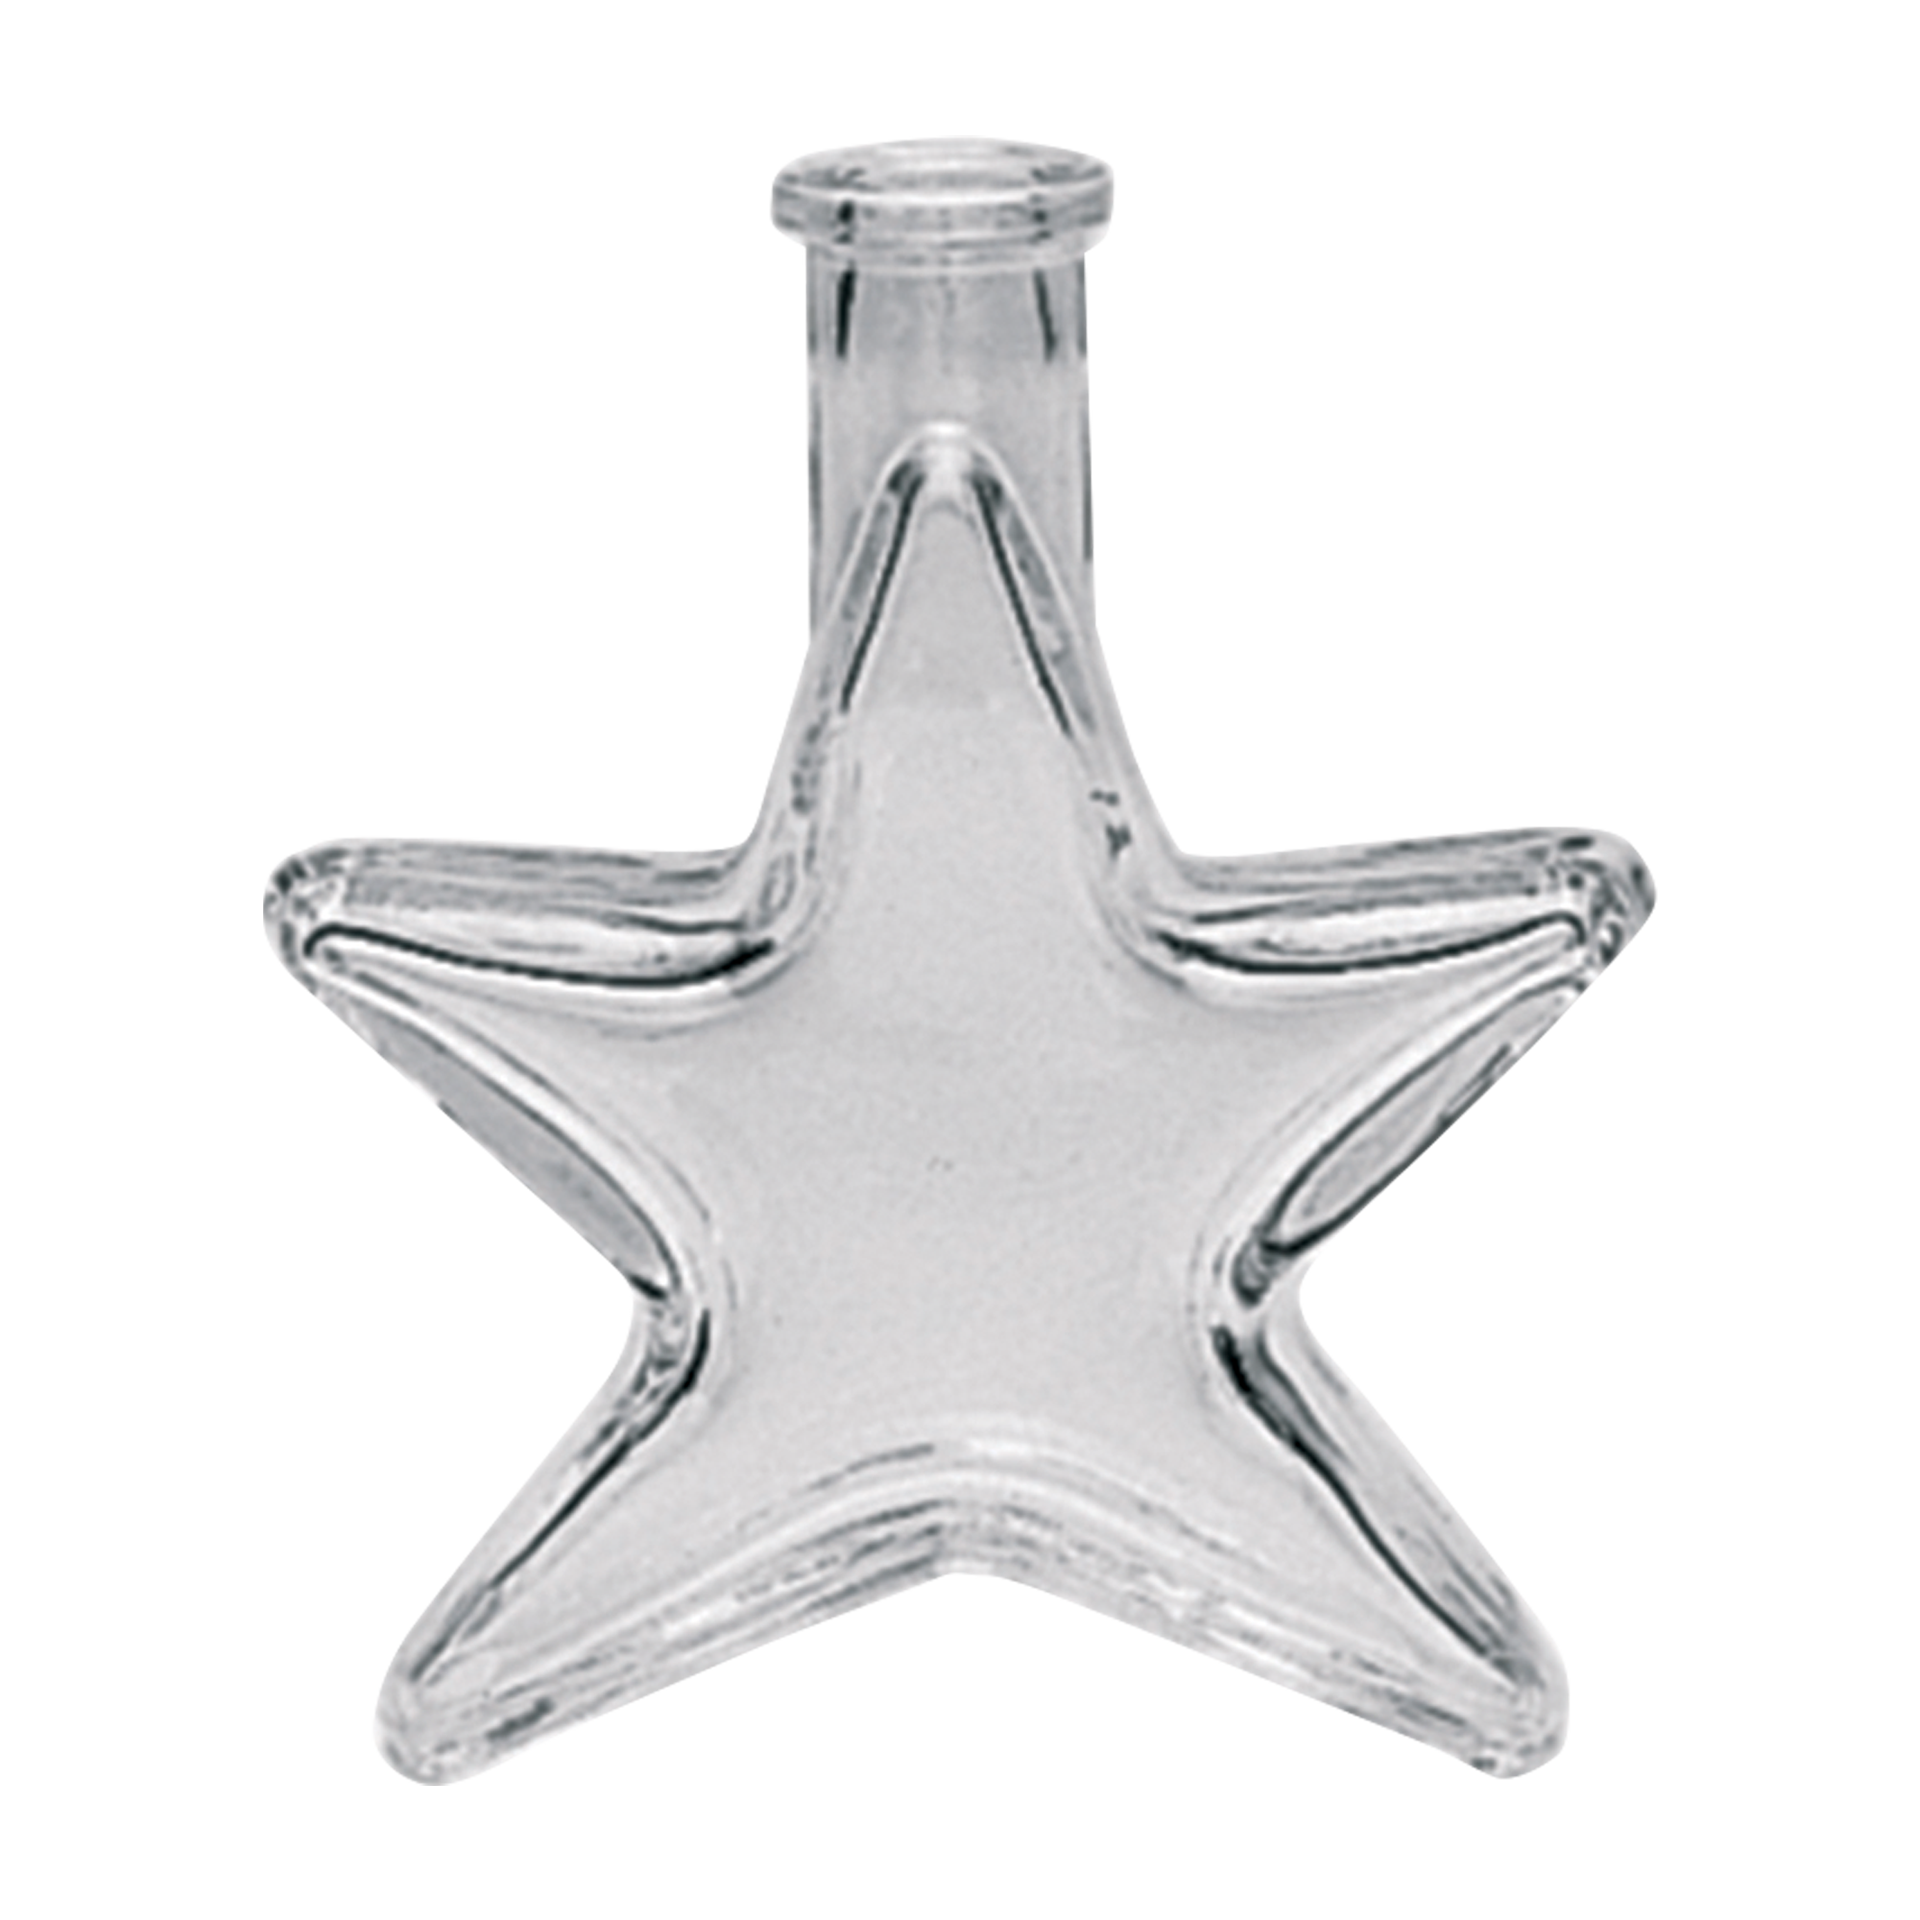 Stern Leerflasche - 100 ml